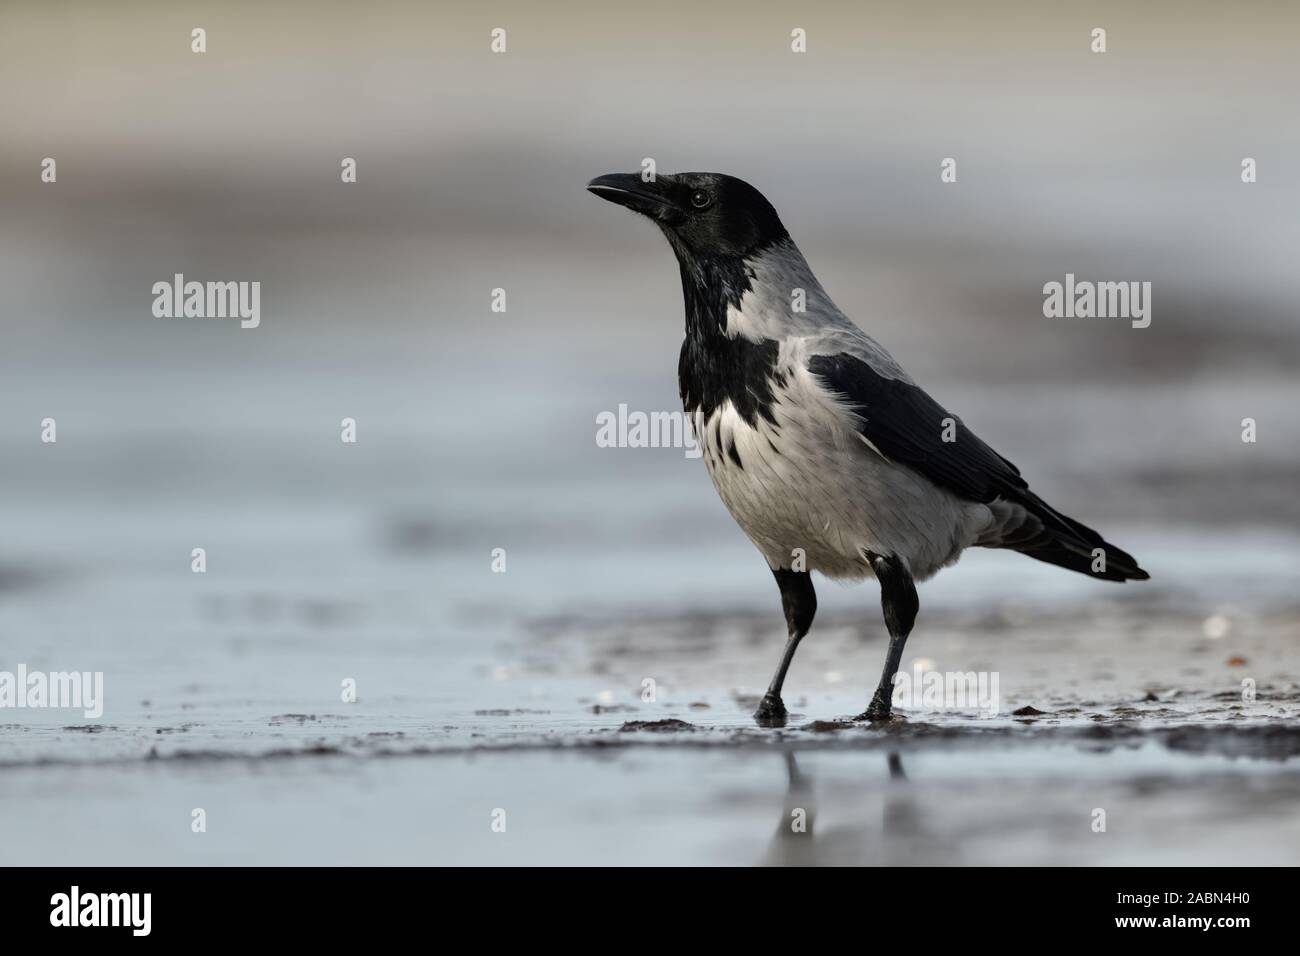 / Nebelkraehe Hoodiecrow ( Corvus cornix ), sentado en la playa cerca de la línea de flotación, mirando alrededor, vida silvestre, Europa. Foto de stock